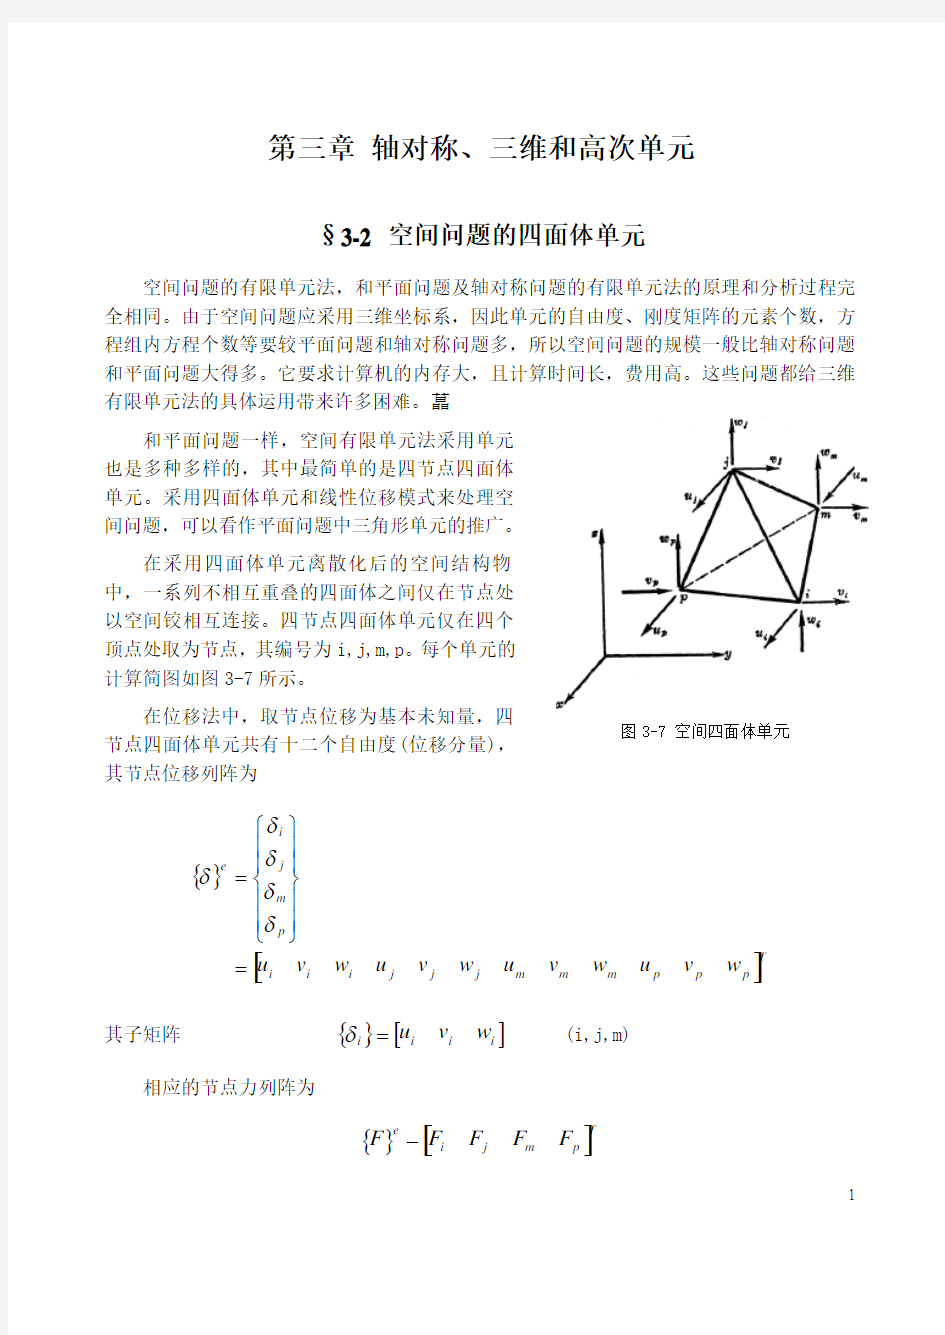 03-02 空间问题的四面体单元解析